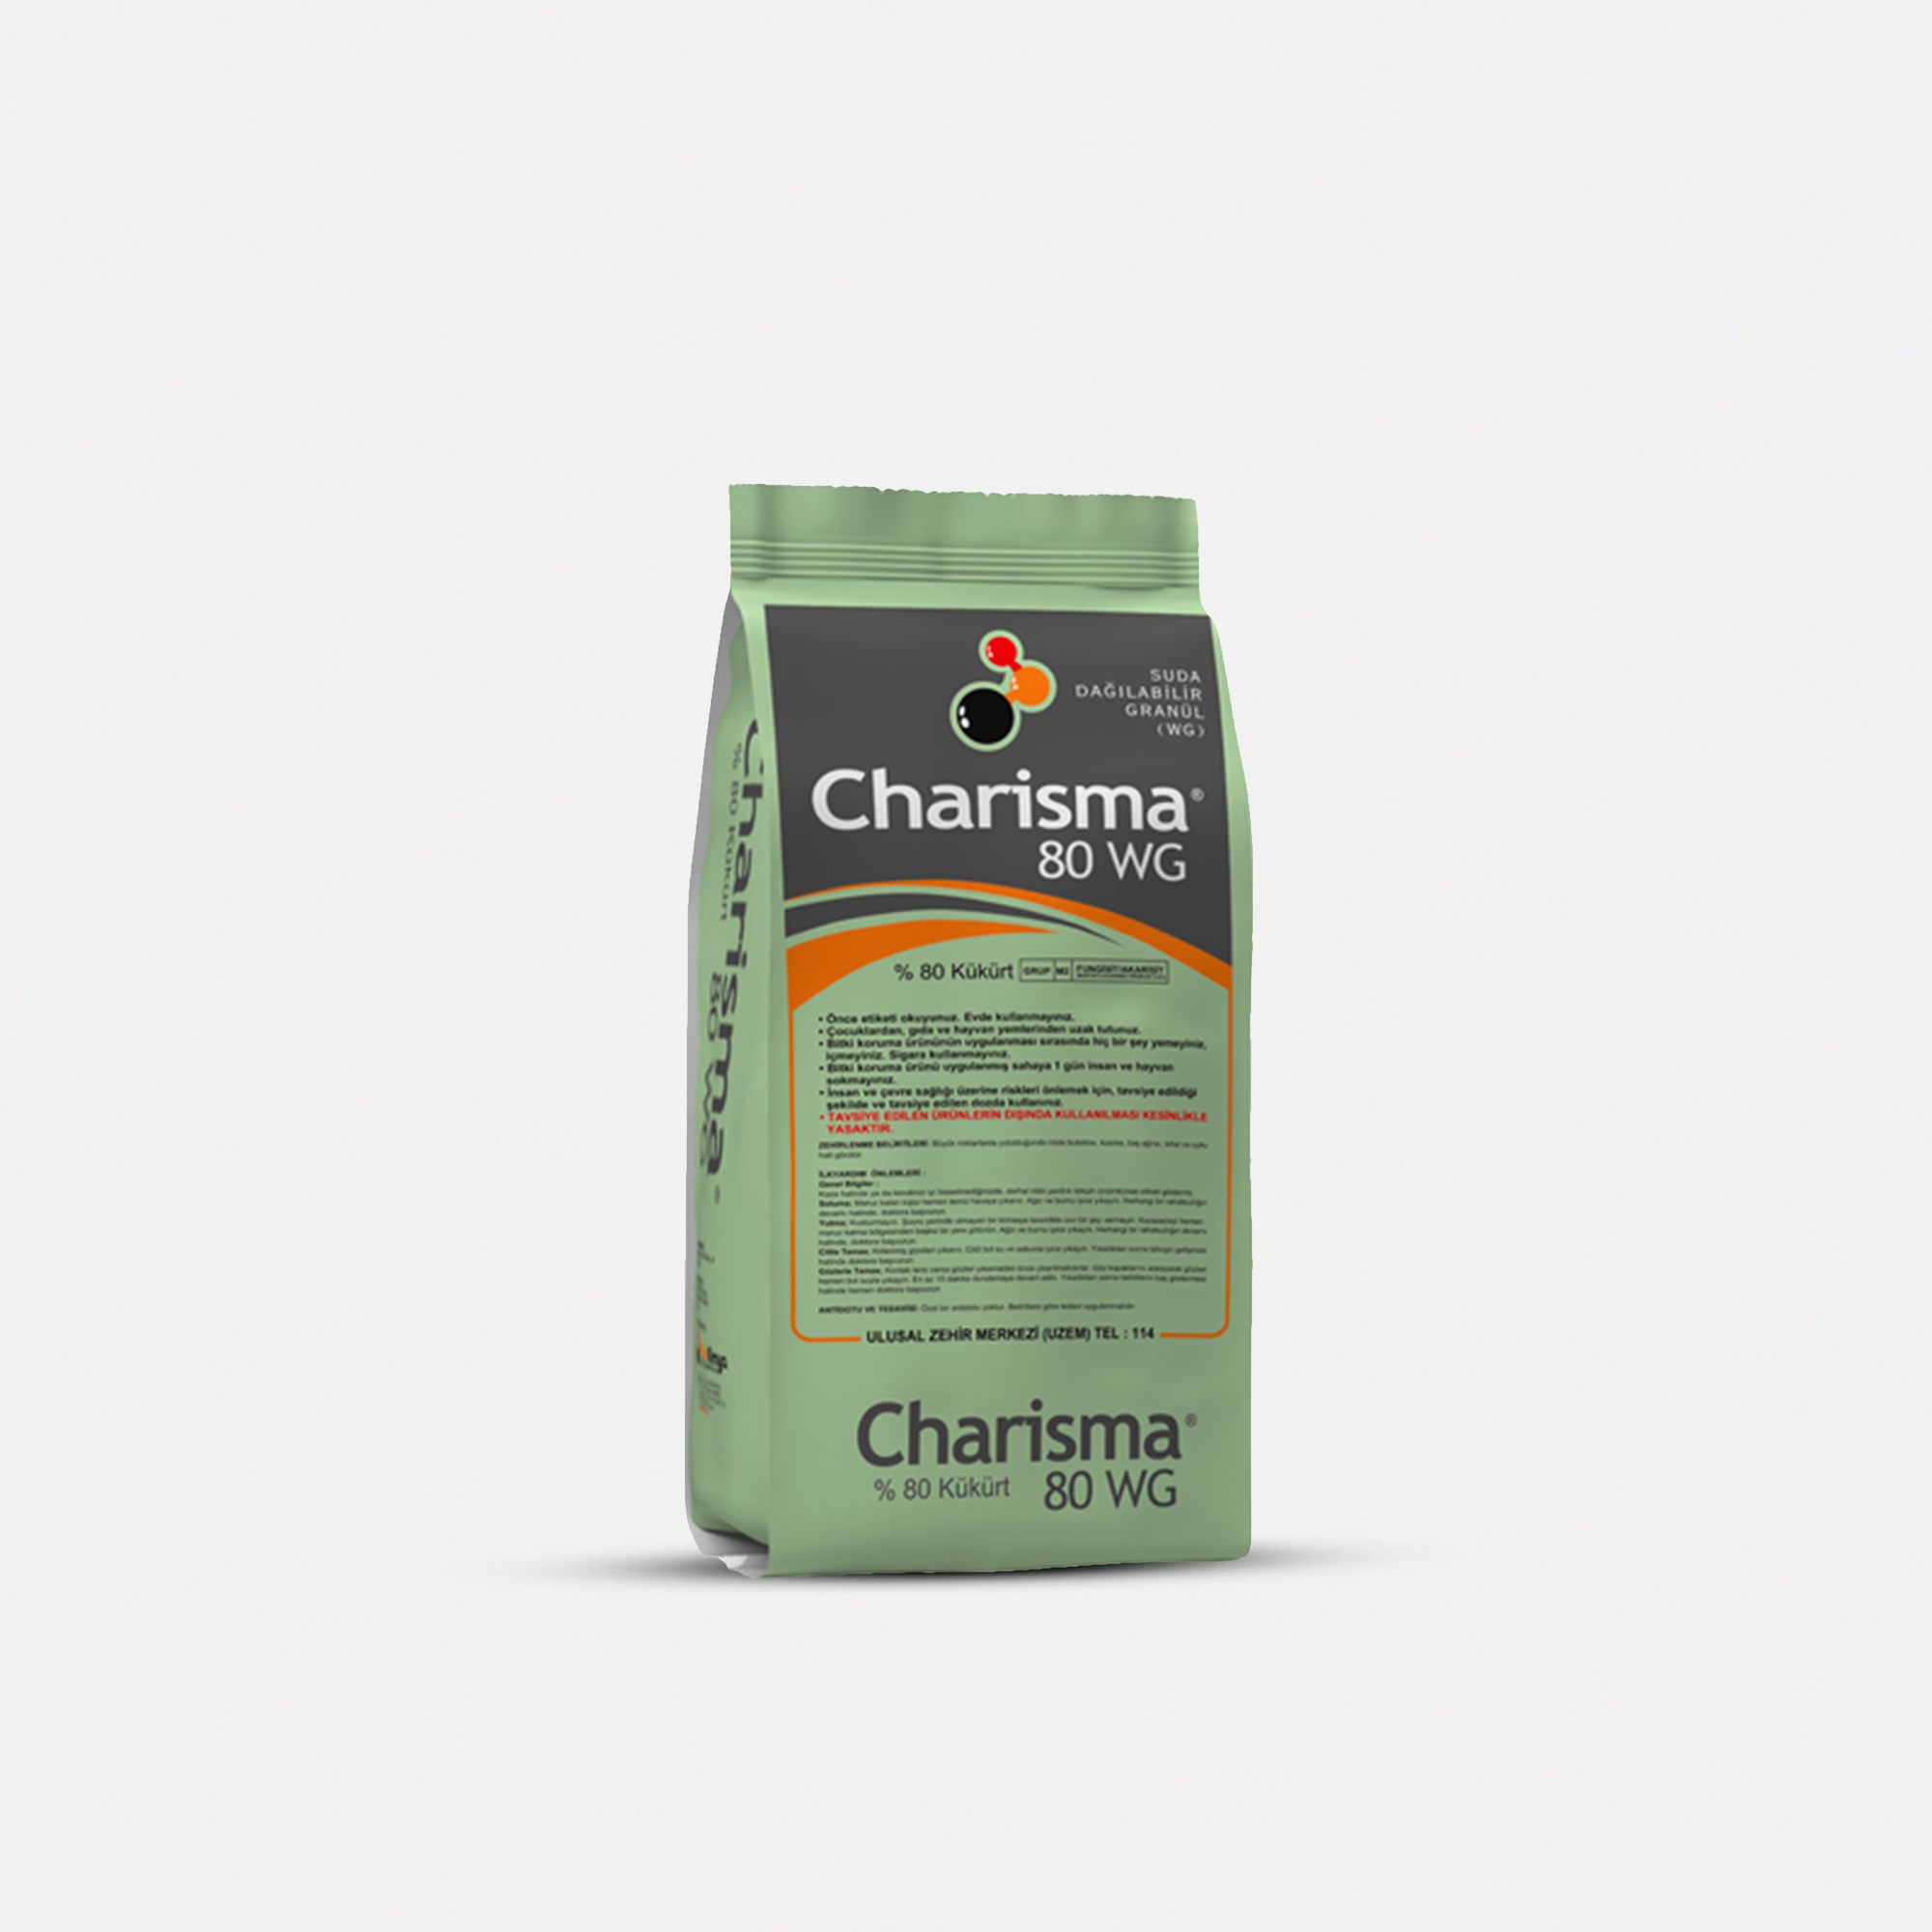 Charisma 80 WG / 80% Sulphur / Platin Kimya / 0.8 kq, əd